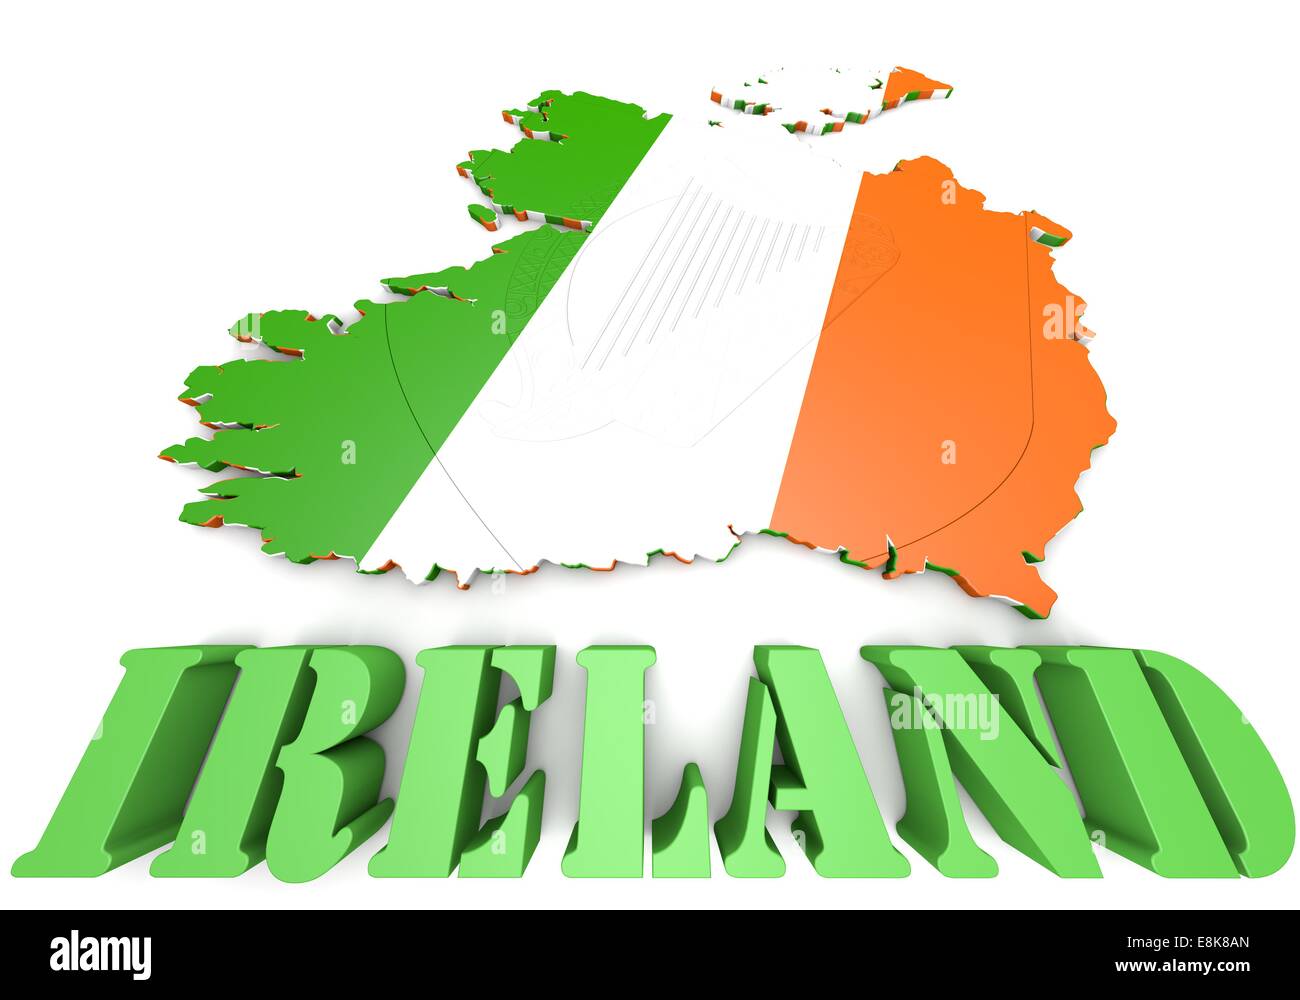 Mappa 3D illustrazione di Irlanda con bandiera e stemma Foto Stock